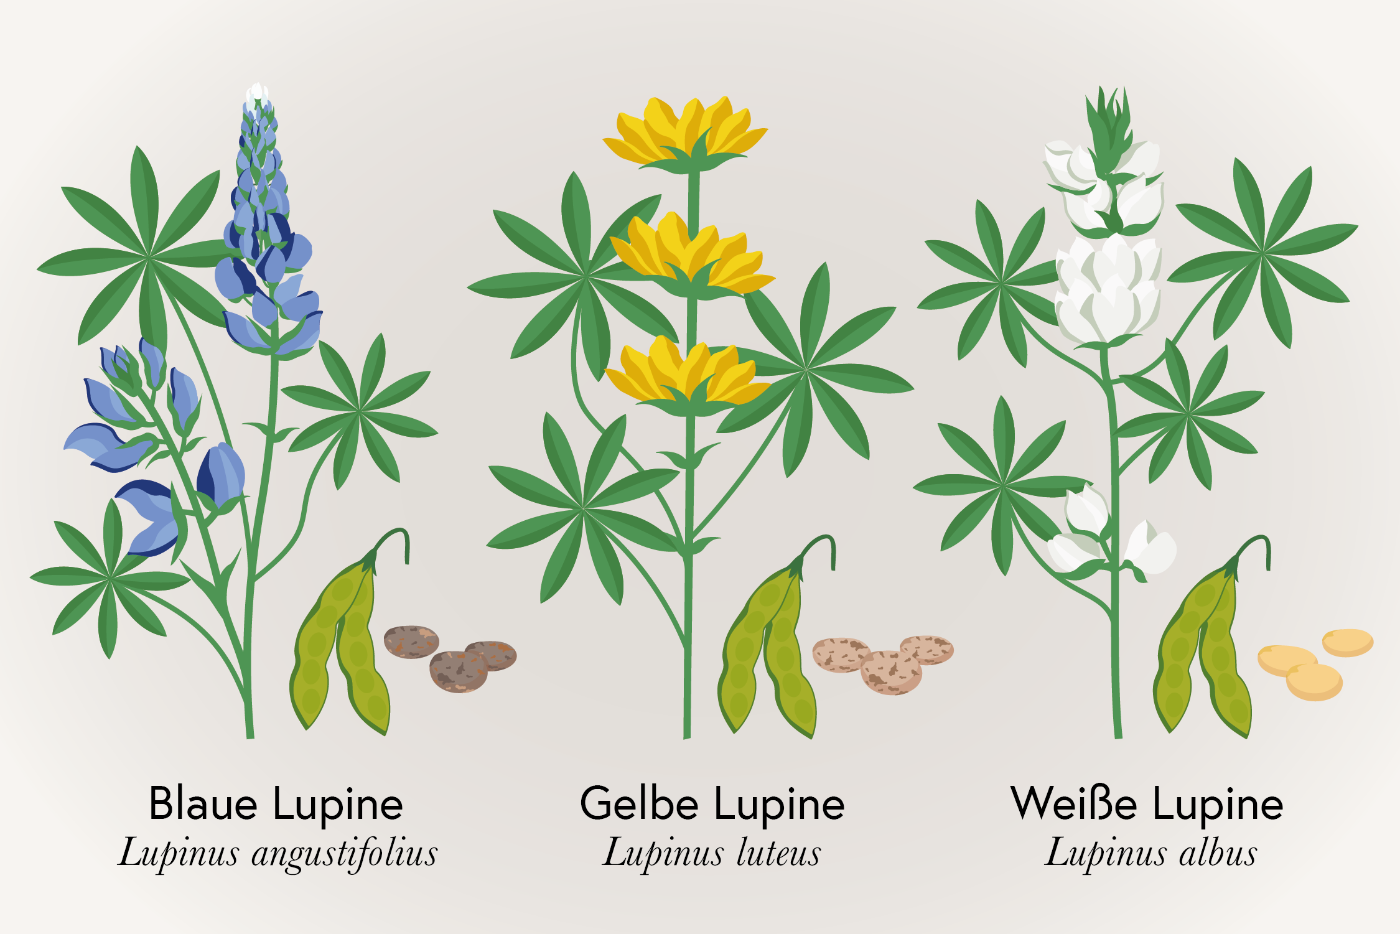 In der Landwirtschaft und Ernährung spielen insbesondere Süßlupinen, wie die Gelbe (Lupinus luteus), Weiße (Lupinus albus) oder Blaue bzw. Schmalblättrige Lupine (Lupinus angustifolius) eine Rolle.